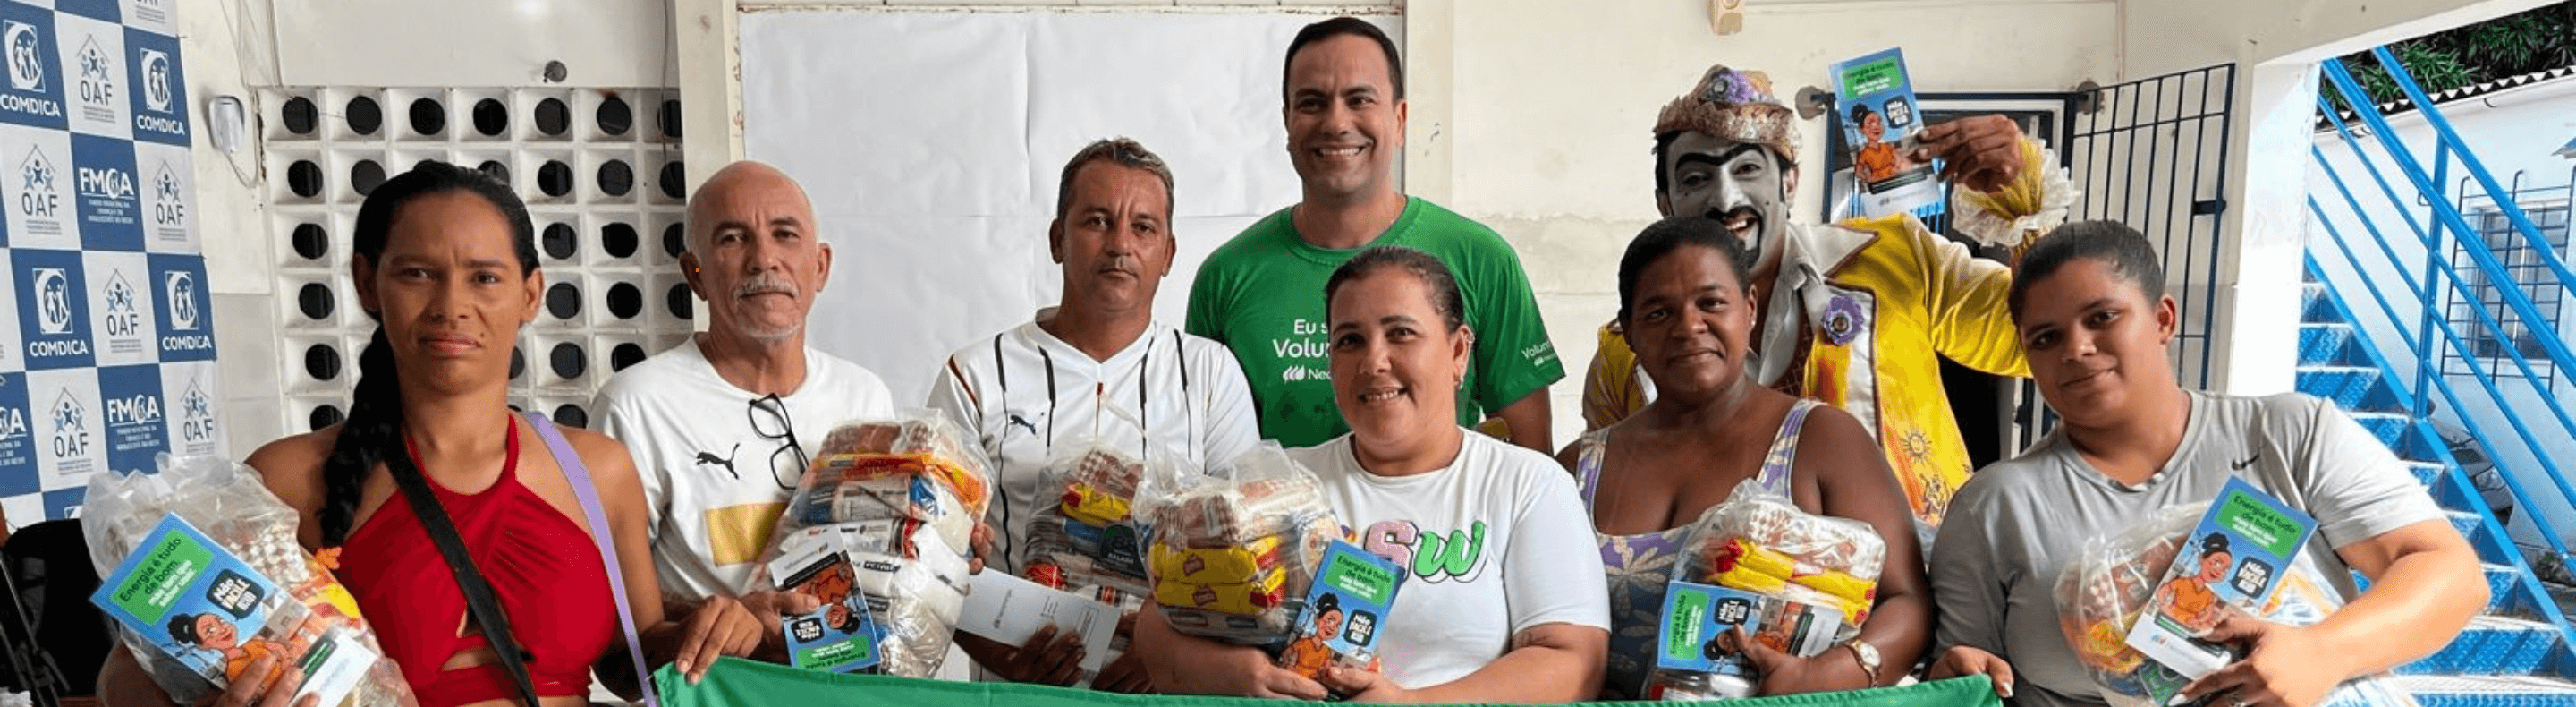 Presidente da Neoenergia Pernambuco reunido com mulheres e homens na entrega de cestas básicas